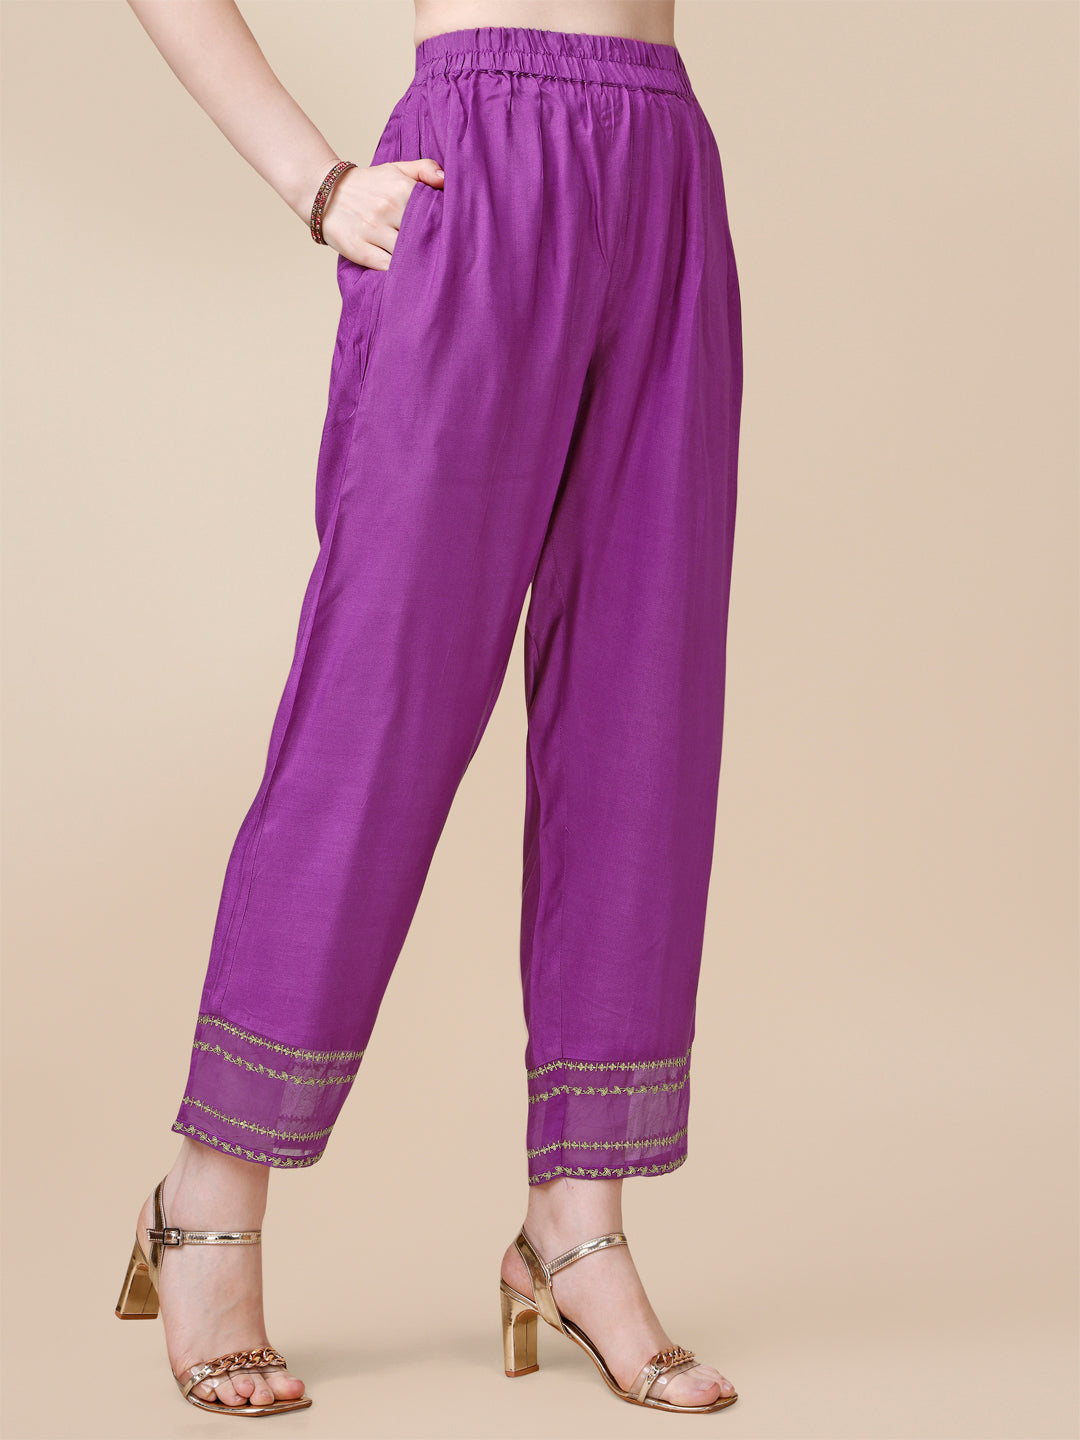 Purple Jacquard Kurta Suit Set Product vendor